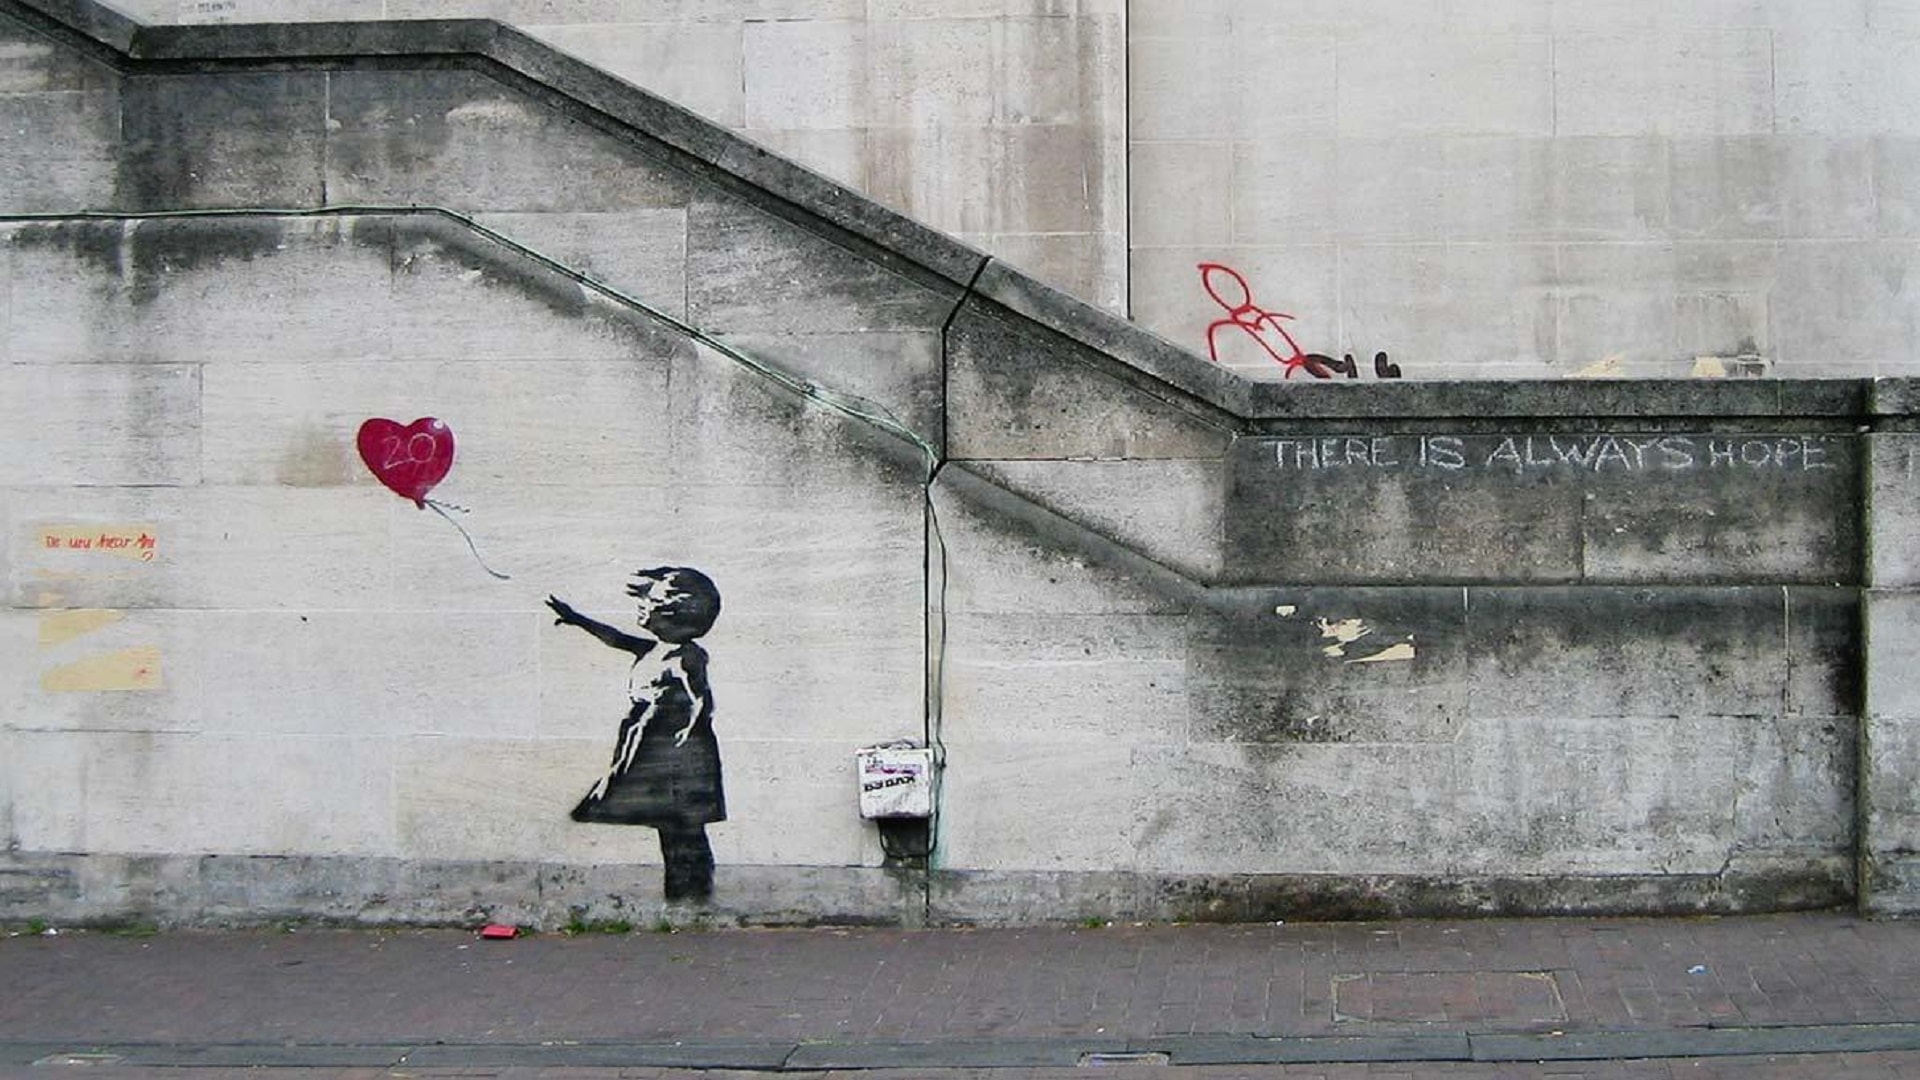 La obra de Banksy es publicada en nuevo libro